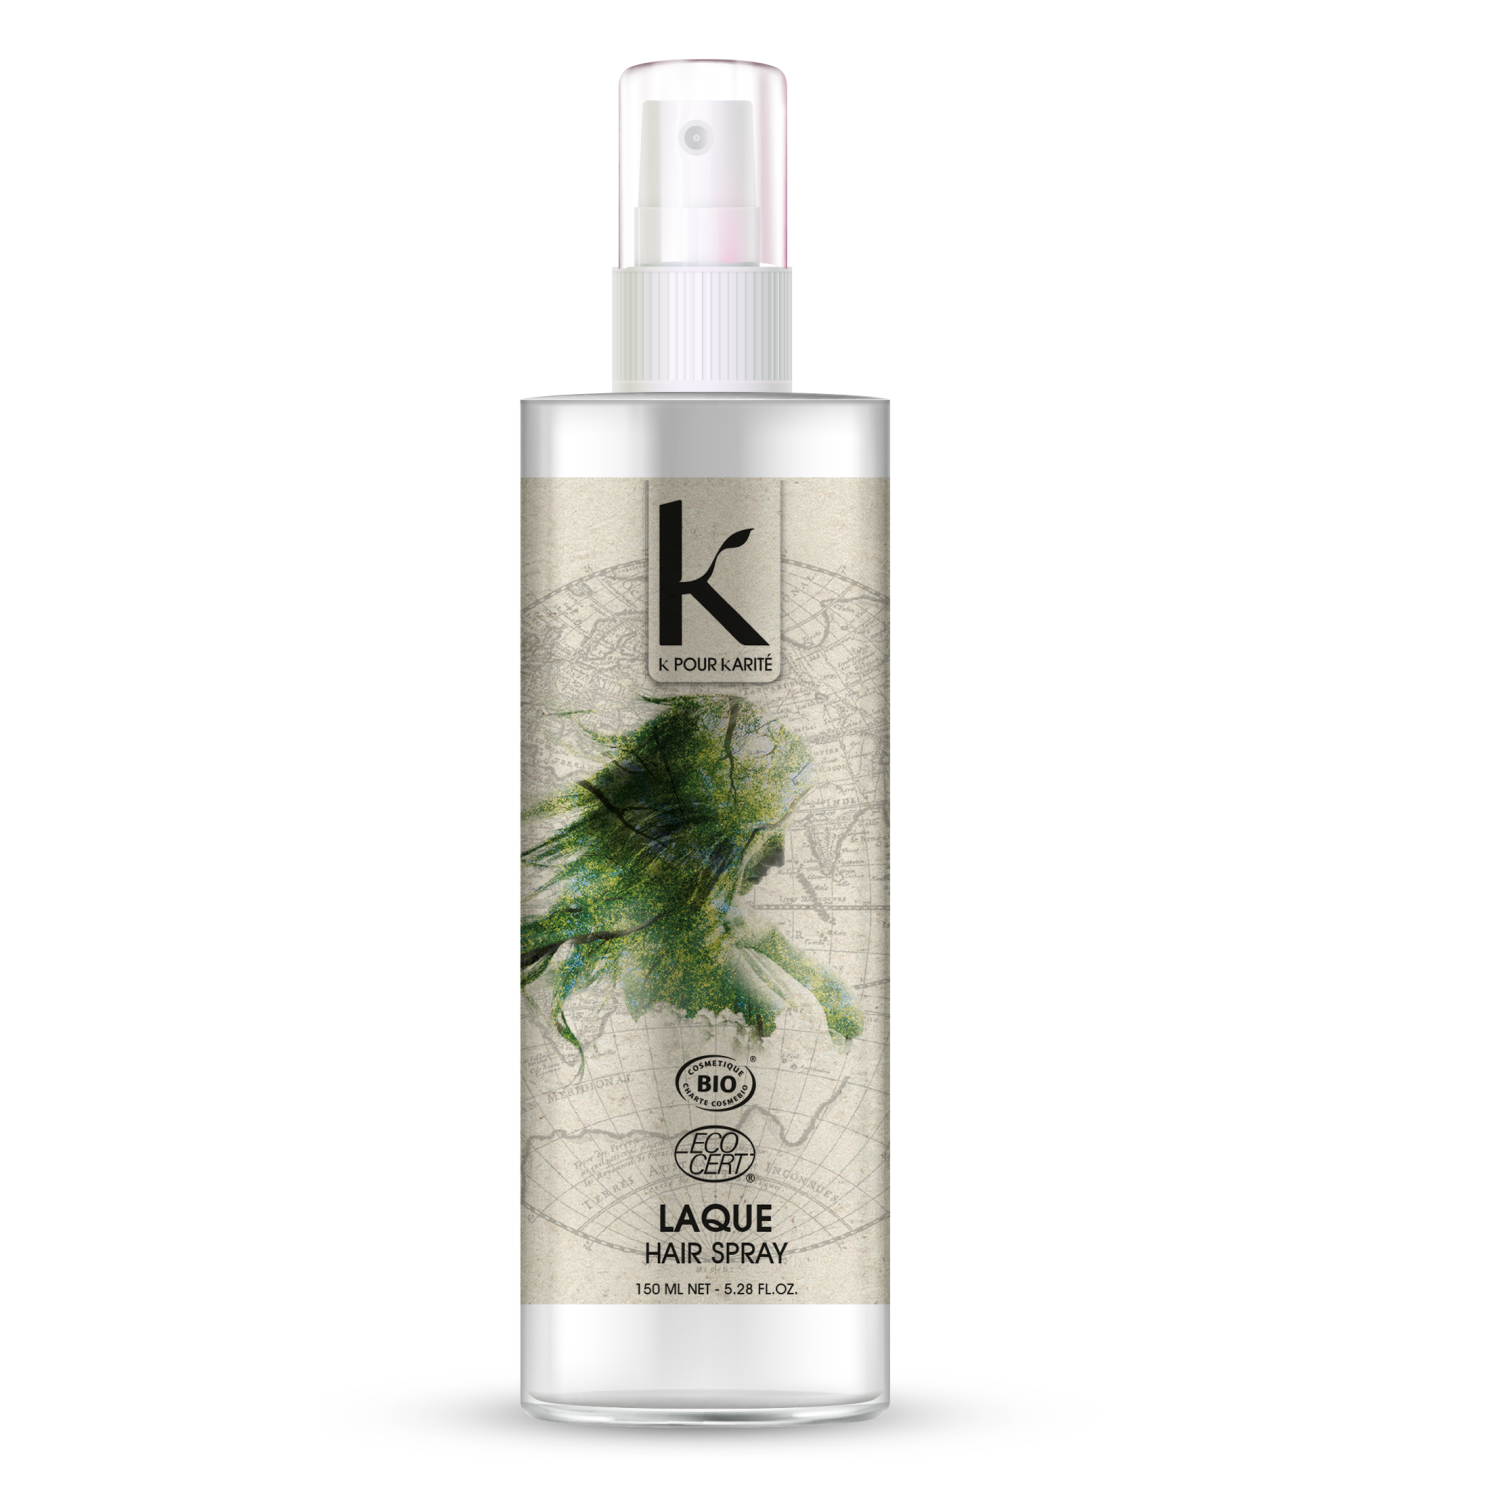 K Pour Karite Hair Spray